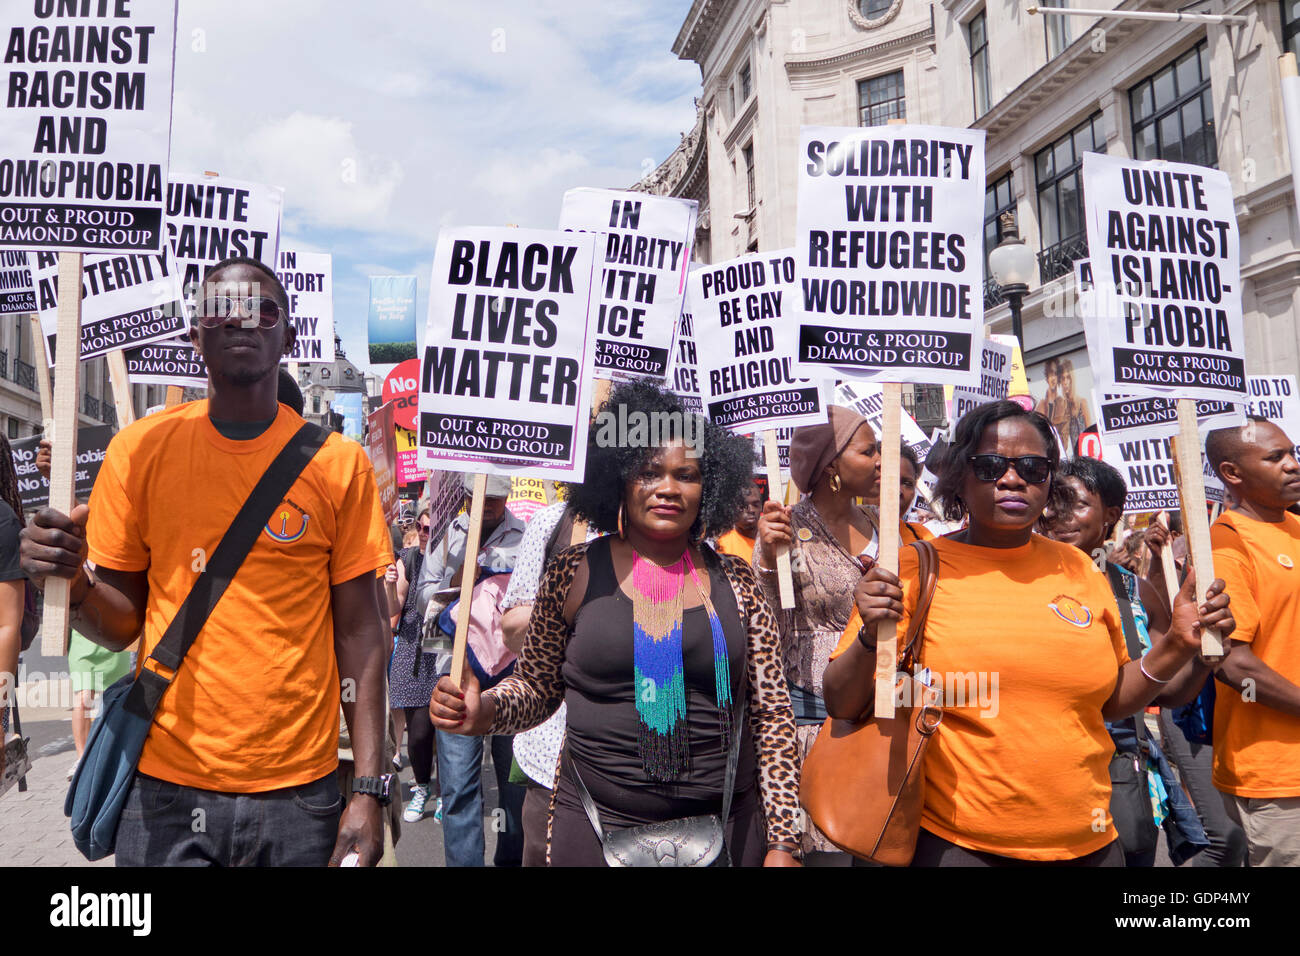 Gay-Out & fier Diamond Group les femmes de groupes LGBT protester contre Rallye et marche à travers le centre de Londres contre le racisme et conservateurs Banque D'Images